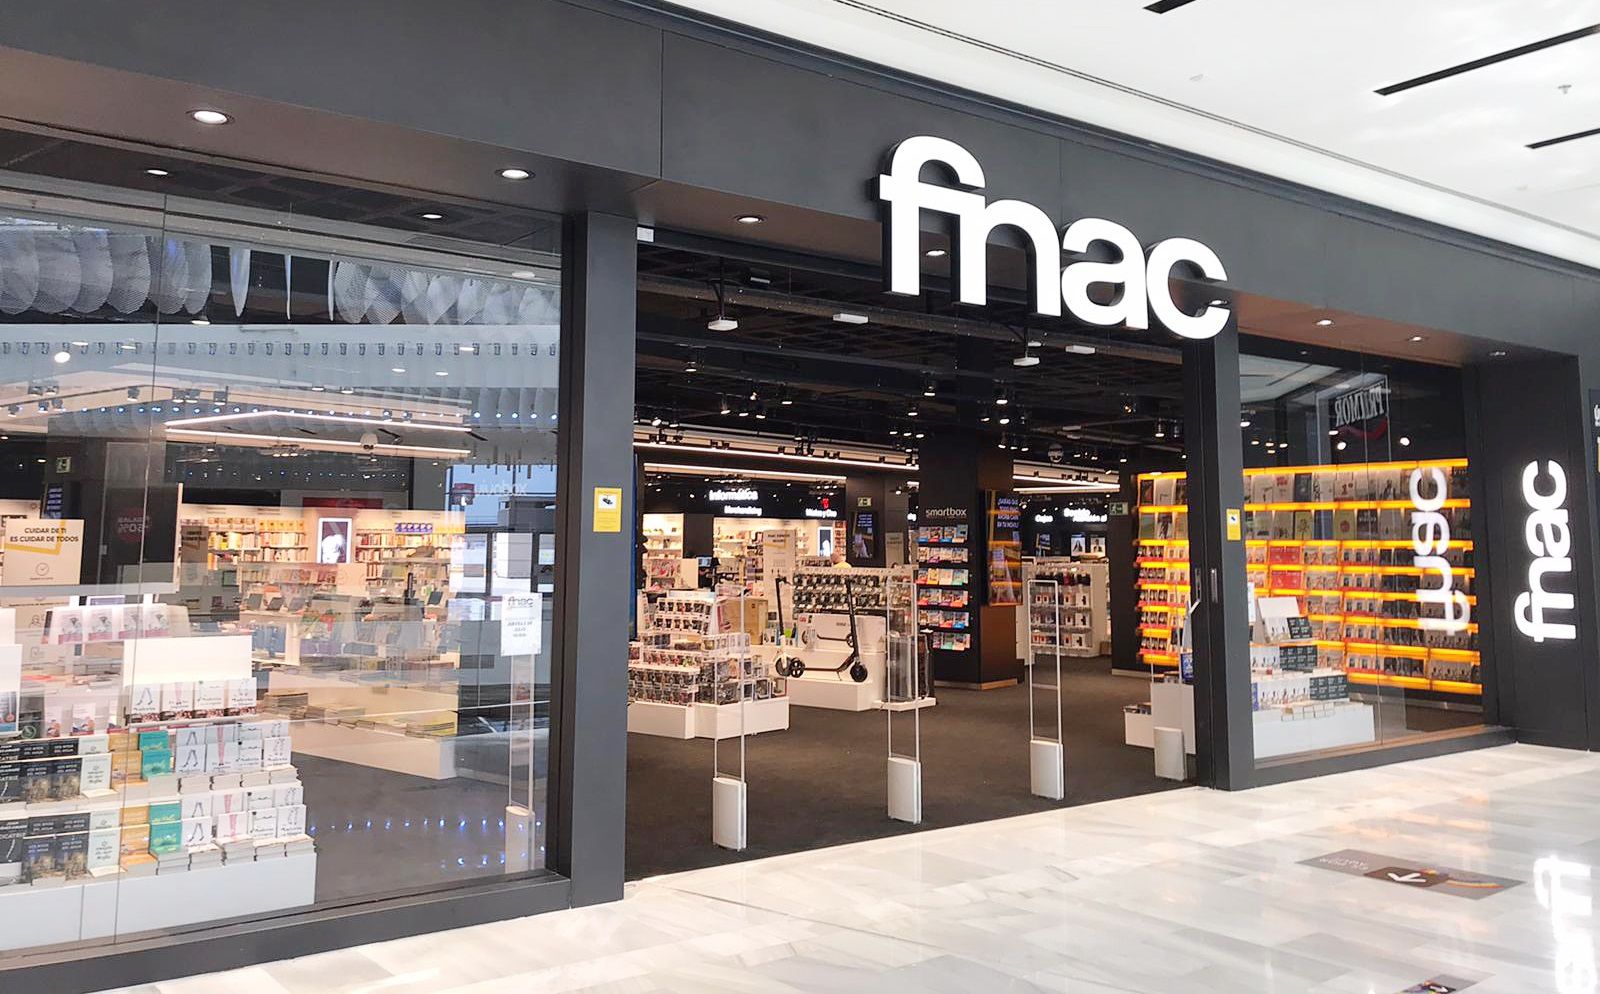 La FNAC, obligada a vender a 124 euros móviles que cuestan 699 por un "error tipográfico"